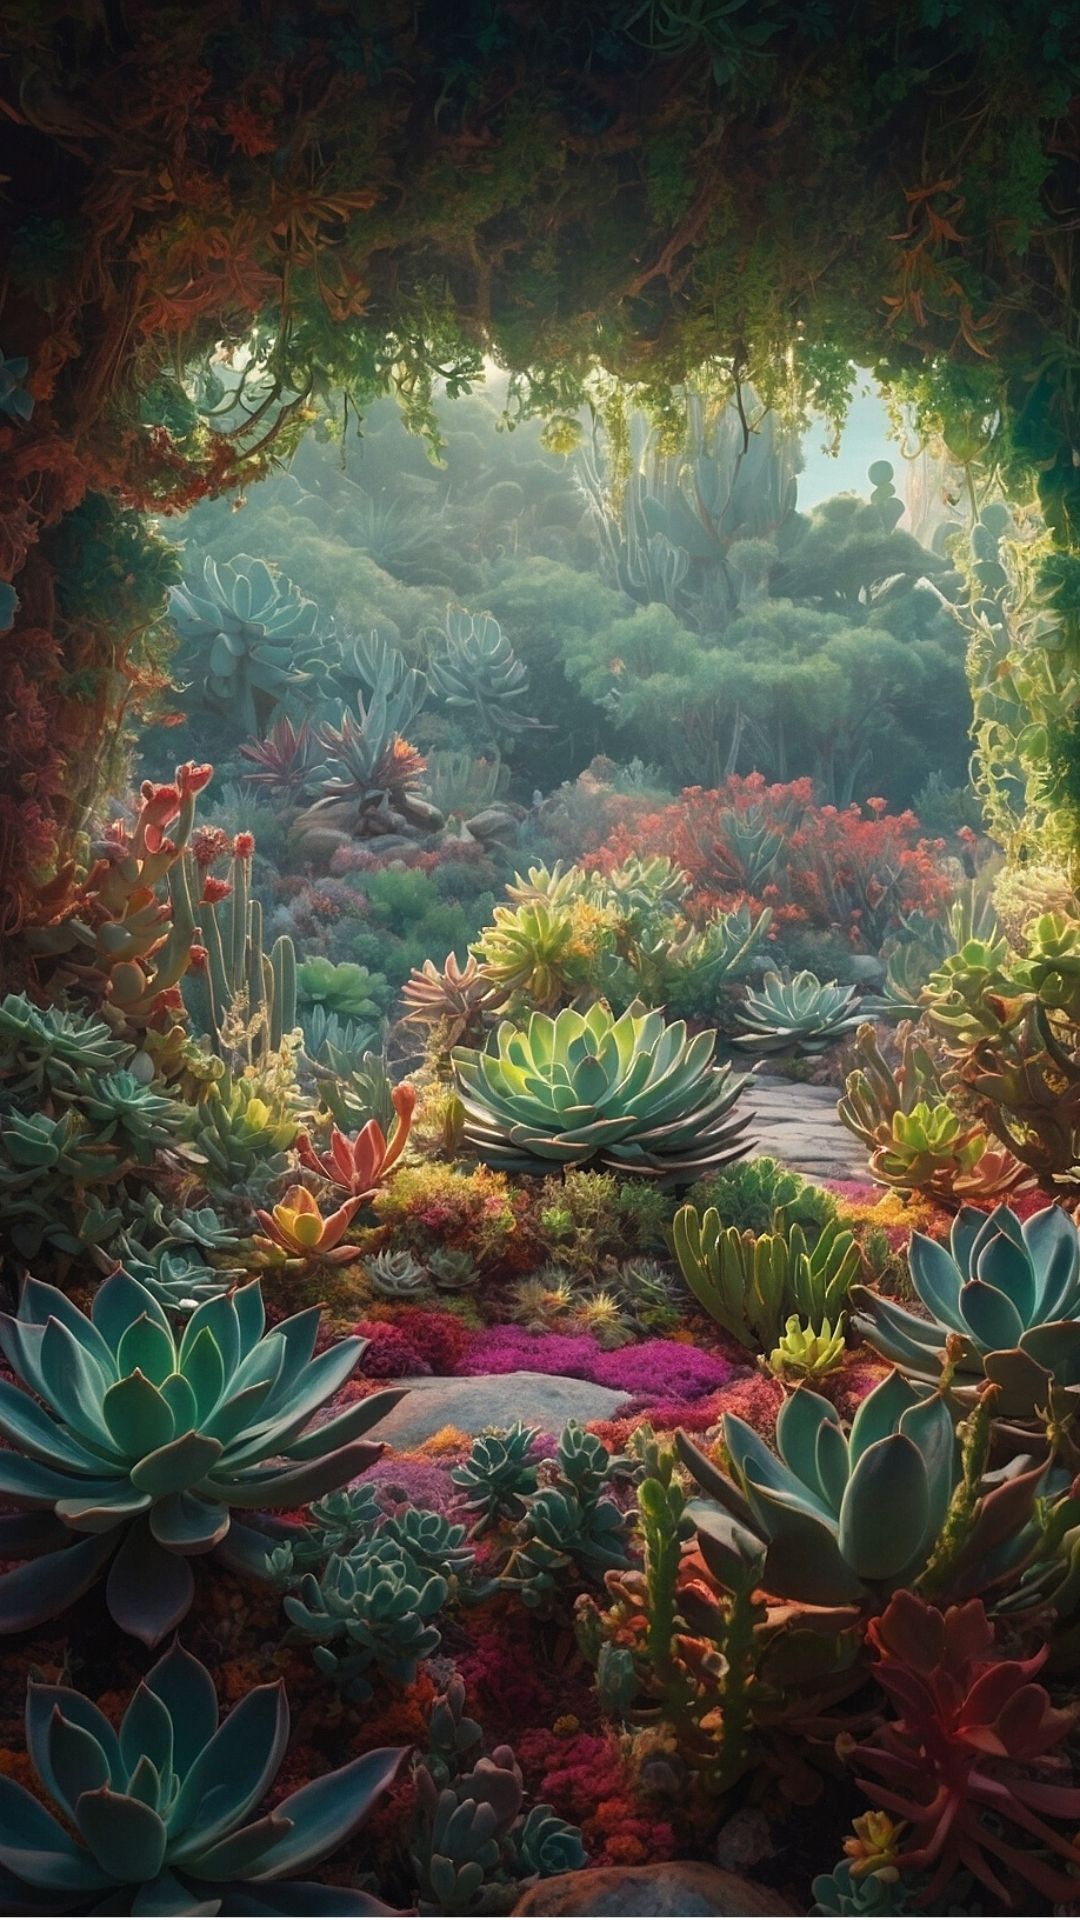 Enchanted Succulent Forest: A Mystical Garden Escape